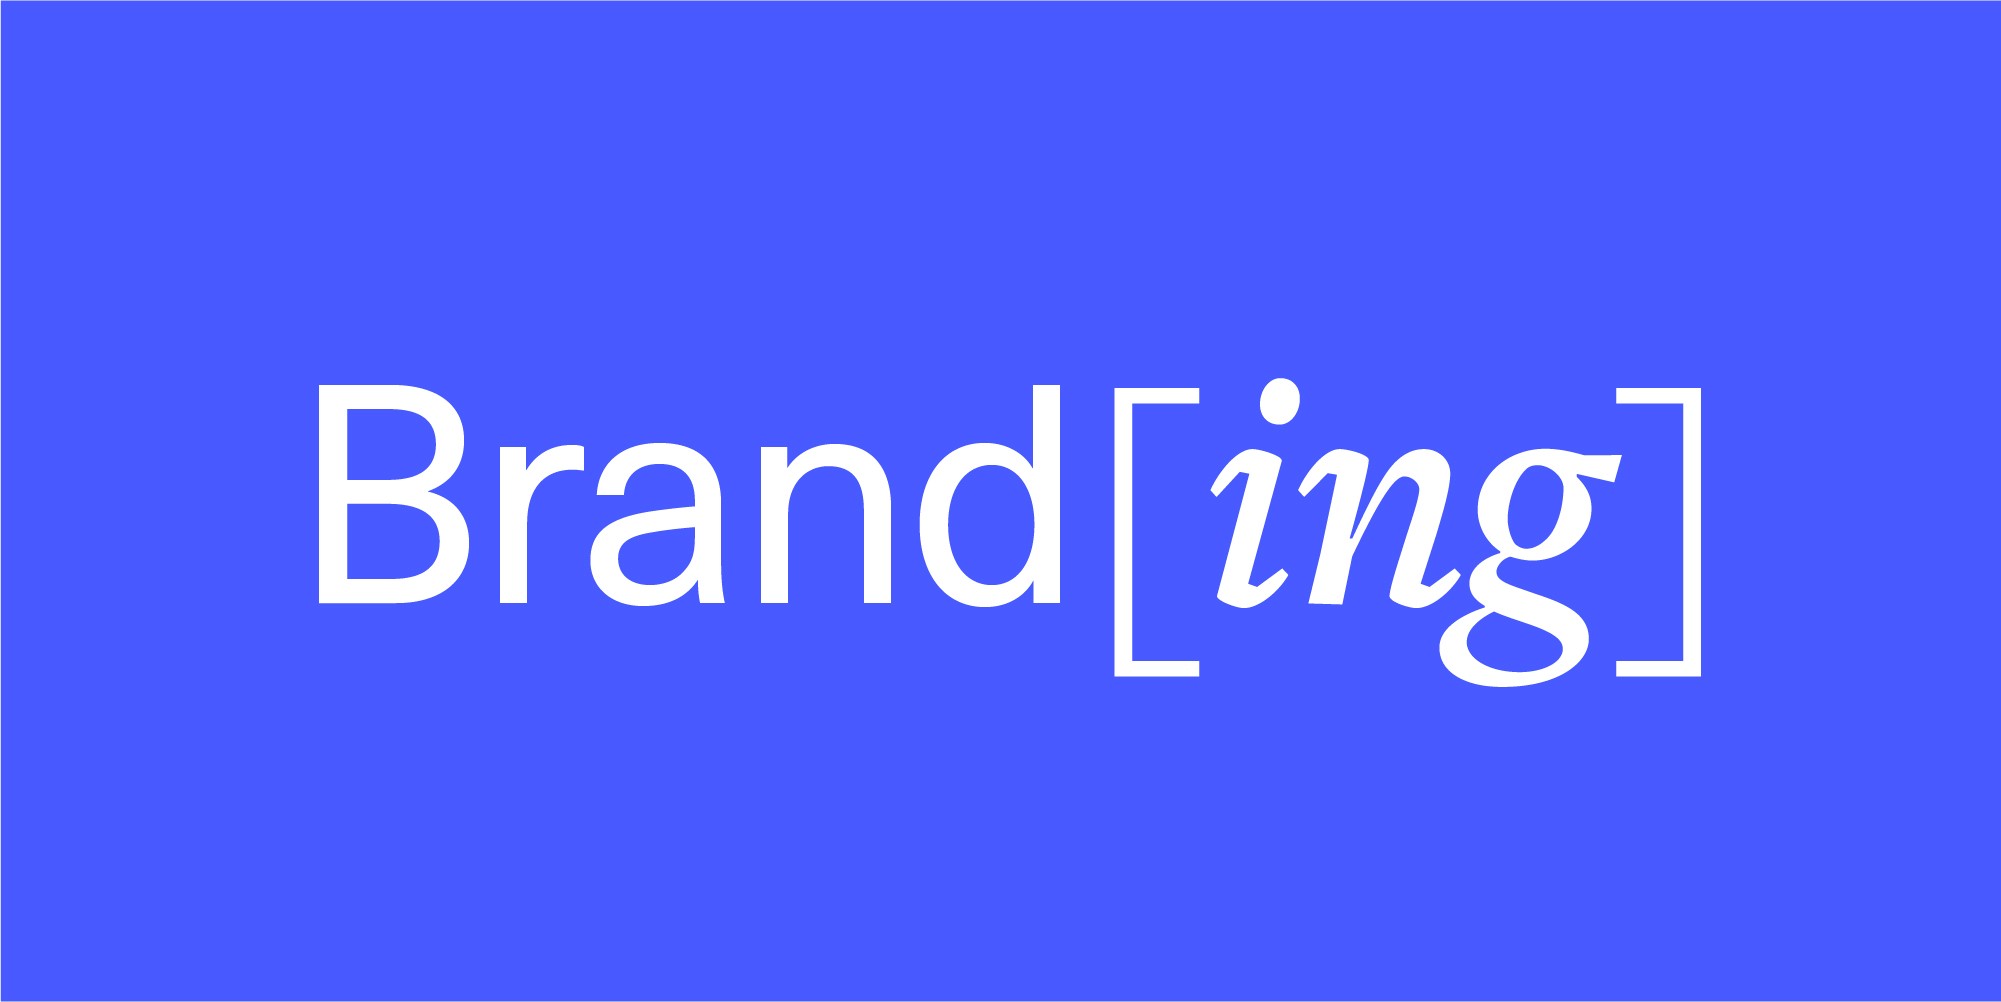 brand glossary reading branding